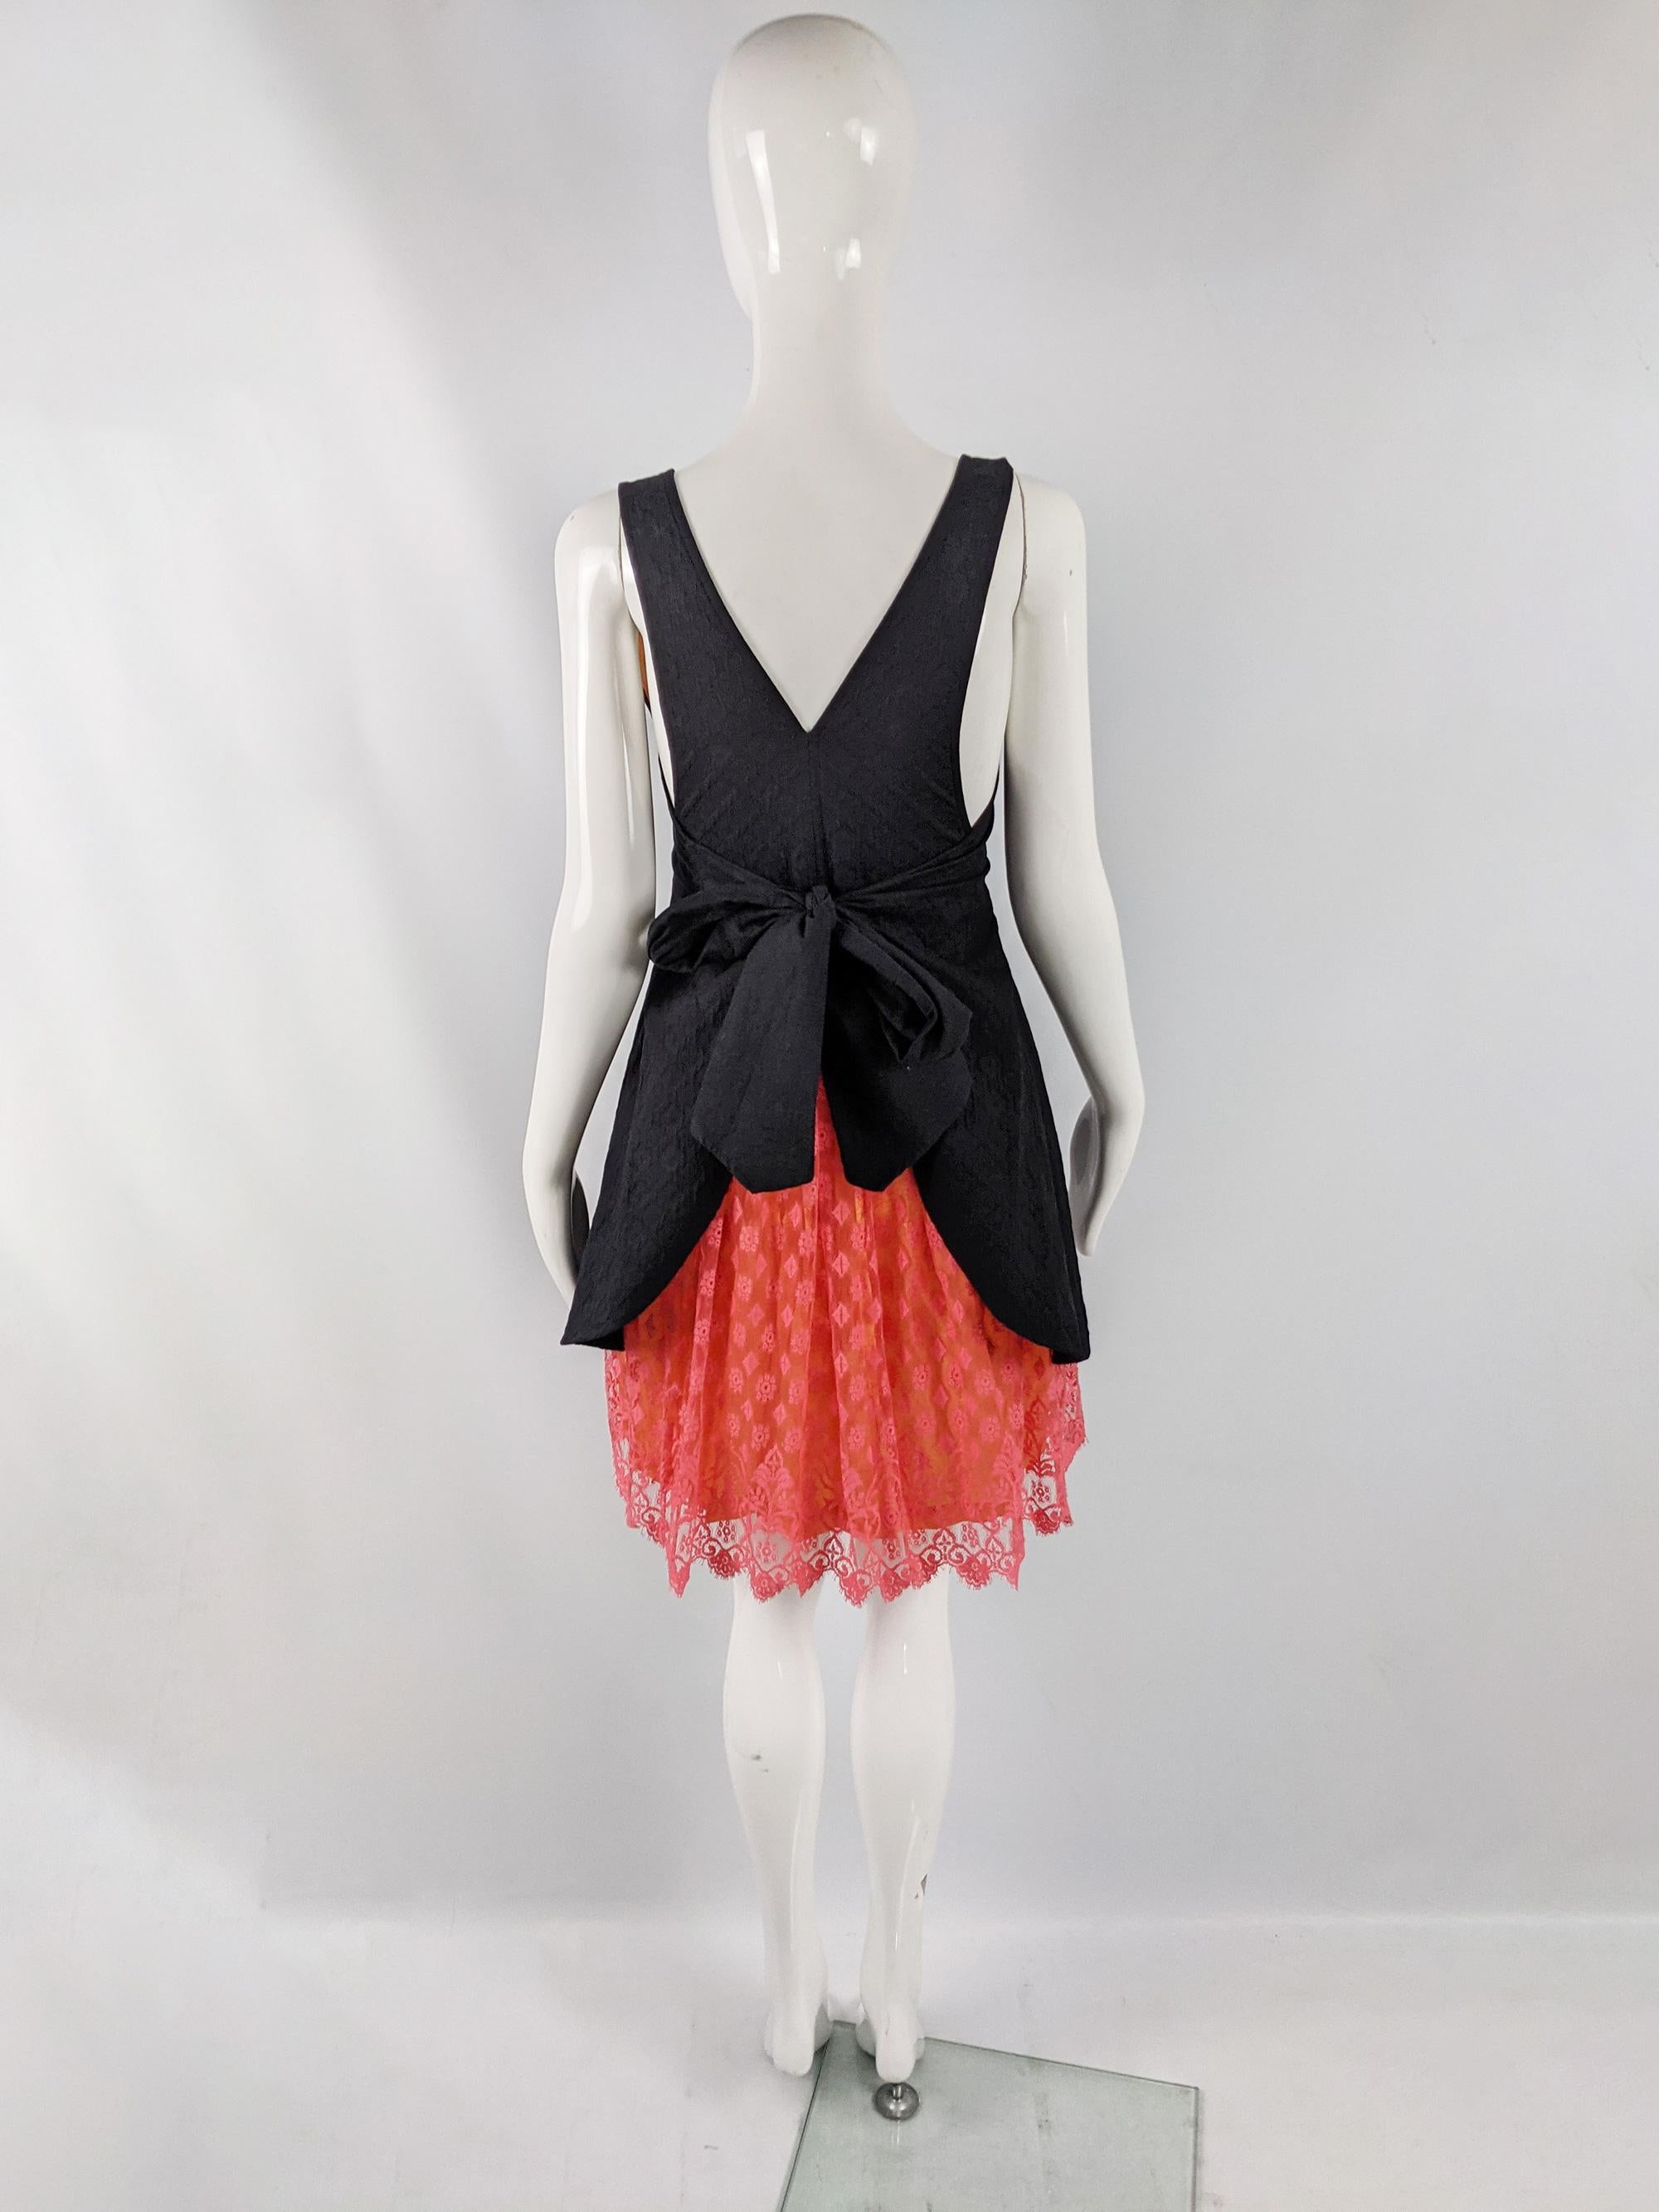 Christian Lacroix Bazar Vintage Black Apron & Coral Lace Dress, 1990s For Sale 1